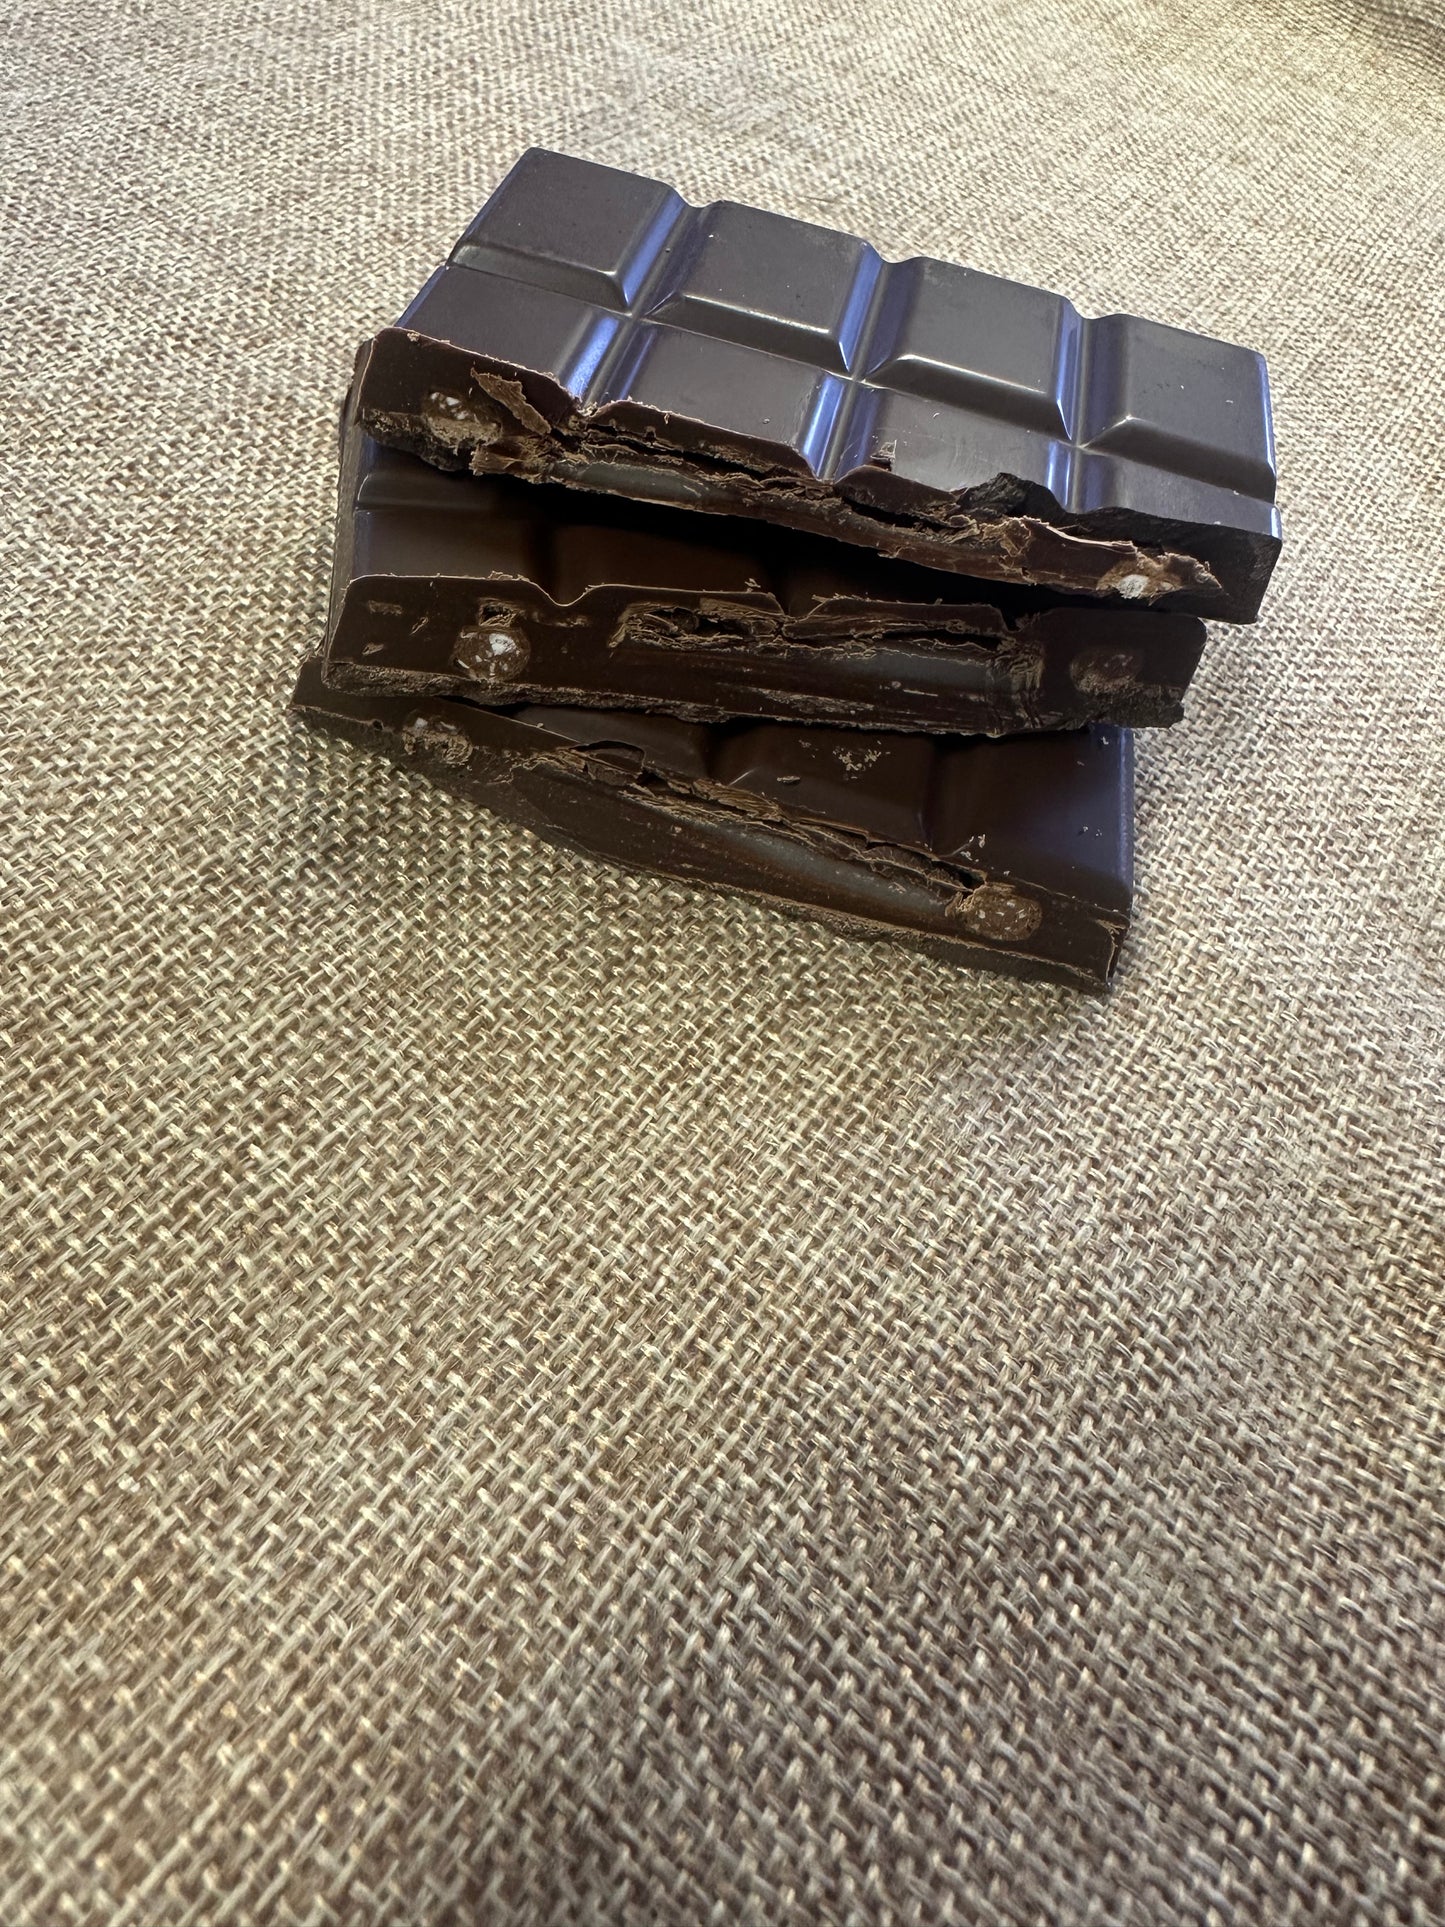 Dark Chocolate, Mint Crunch